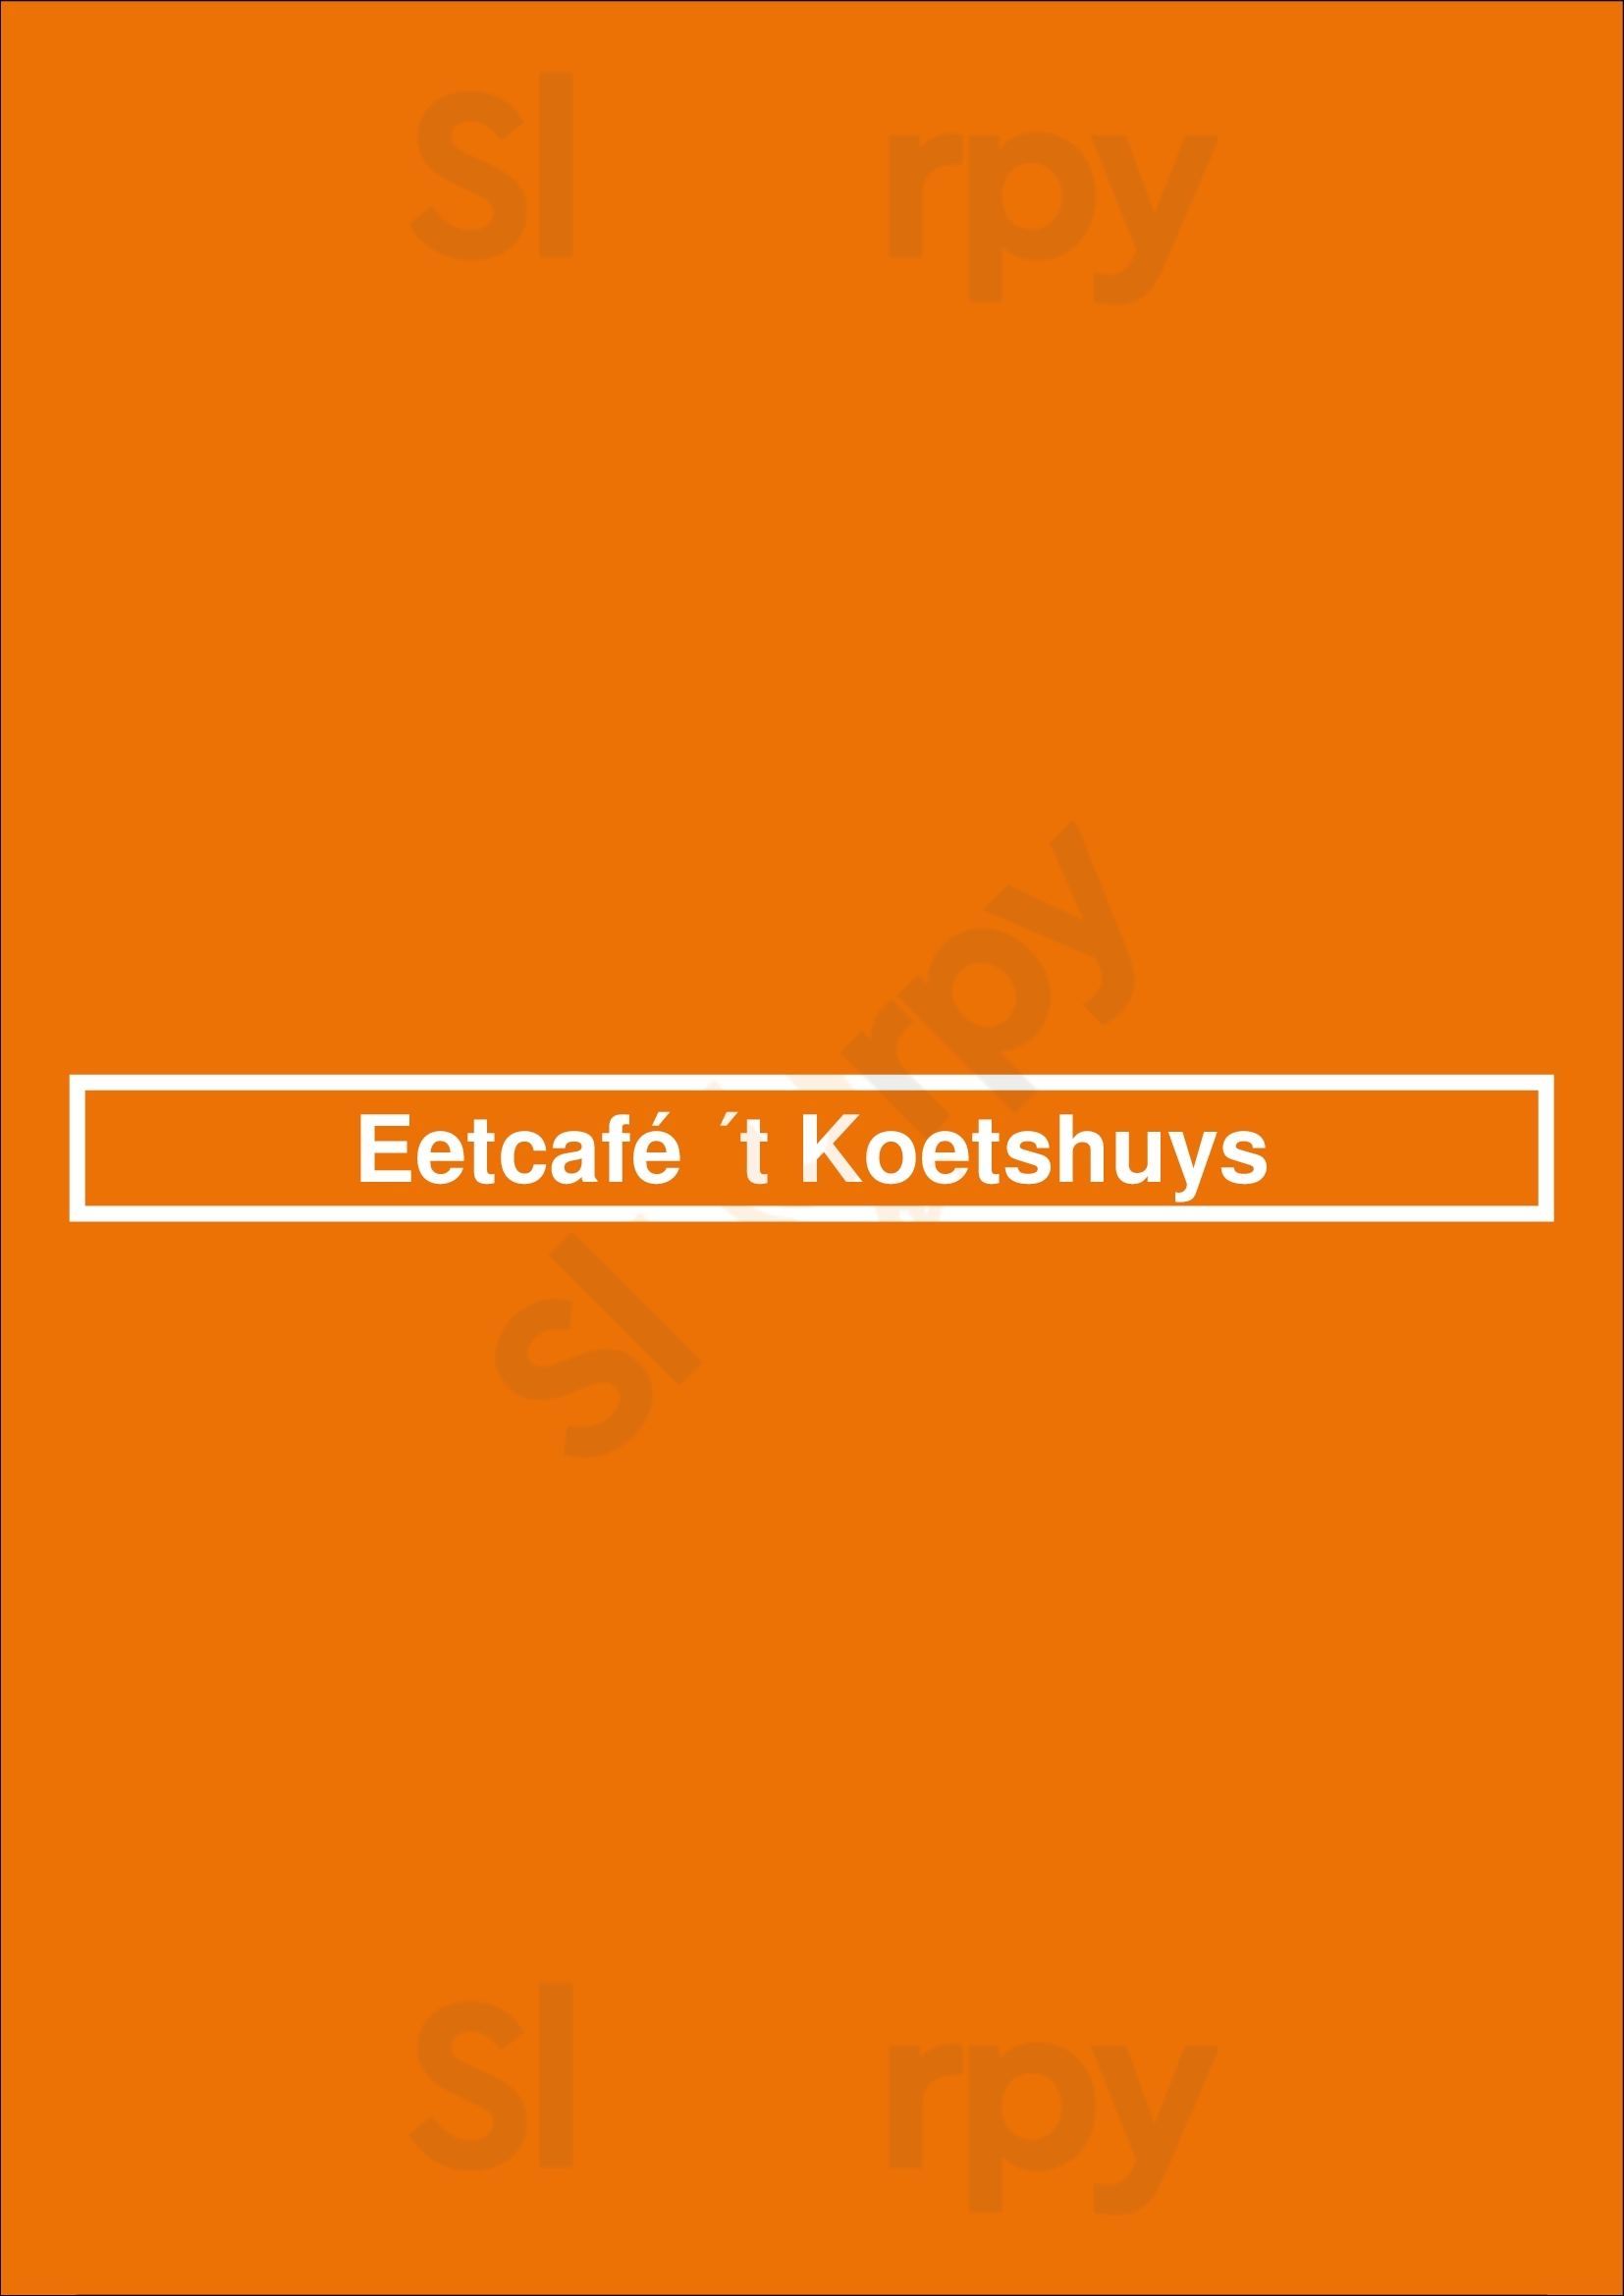 Eetcafé ´t Koetshuys Groningen Menu - 1